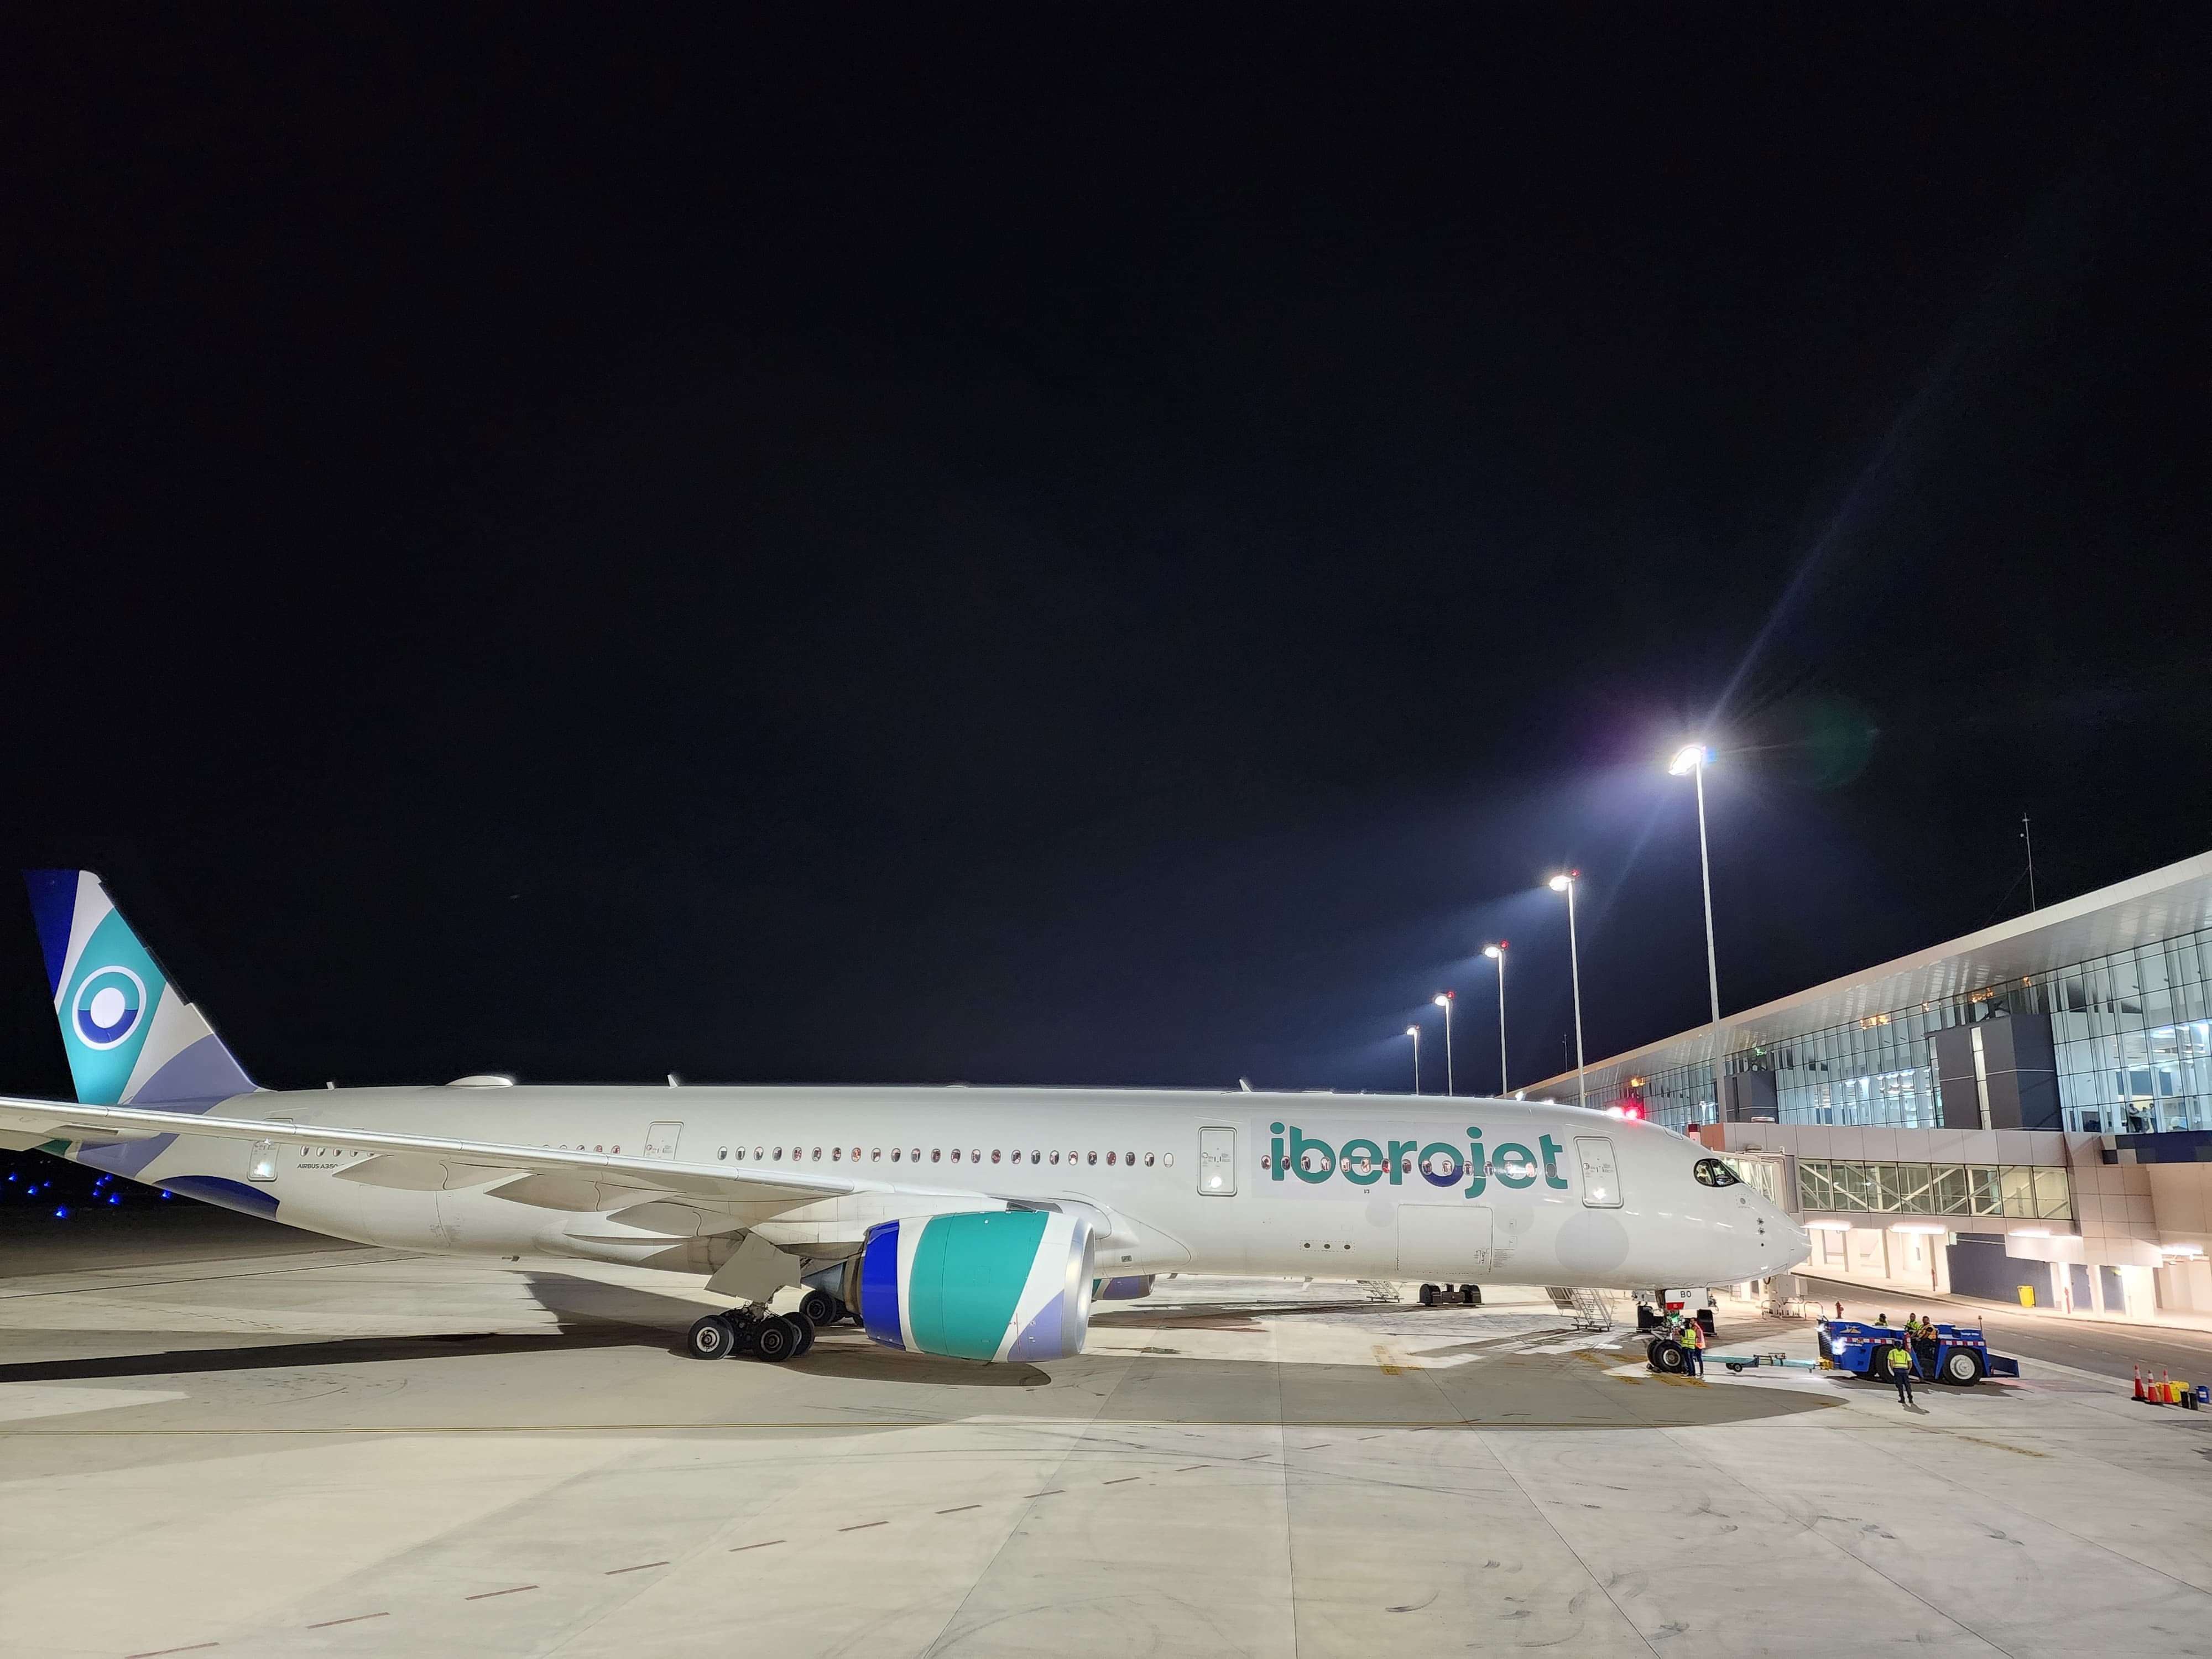 Noticias-Aeropuerto-Tegucigalpa-Honduras-Toncontín-Iberojet anuncia que tendrá dos vuelos adicionales en temporada alta